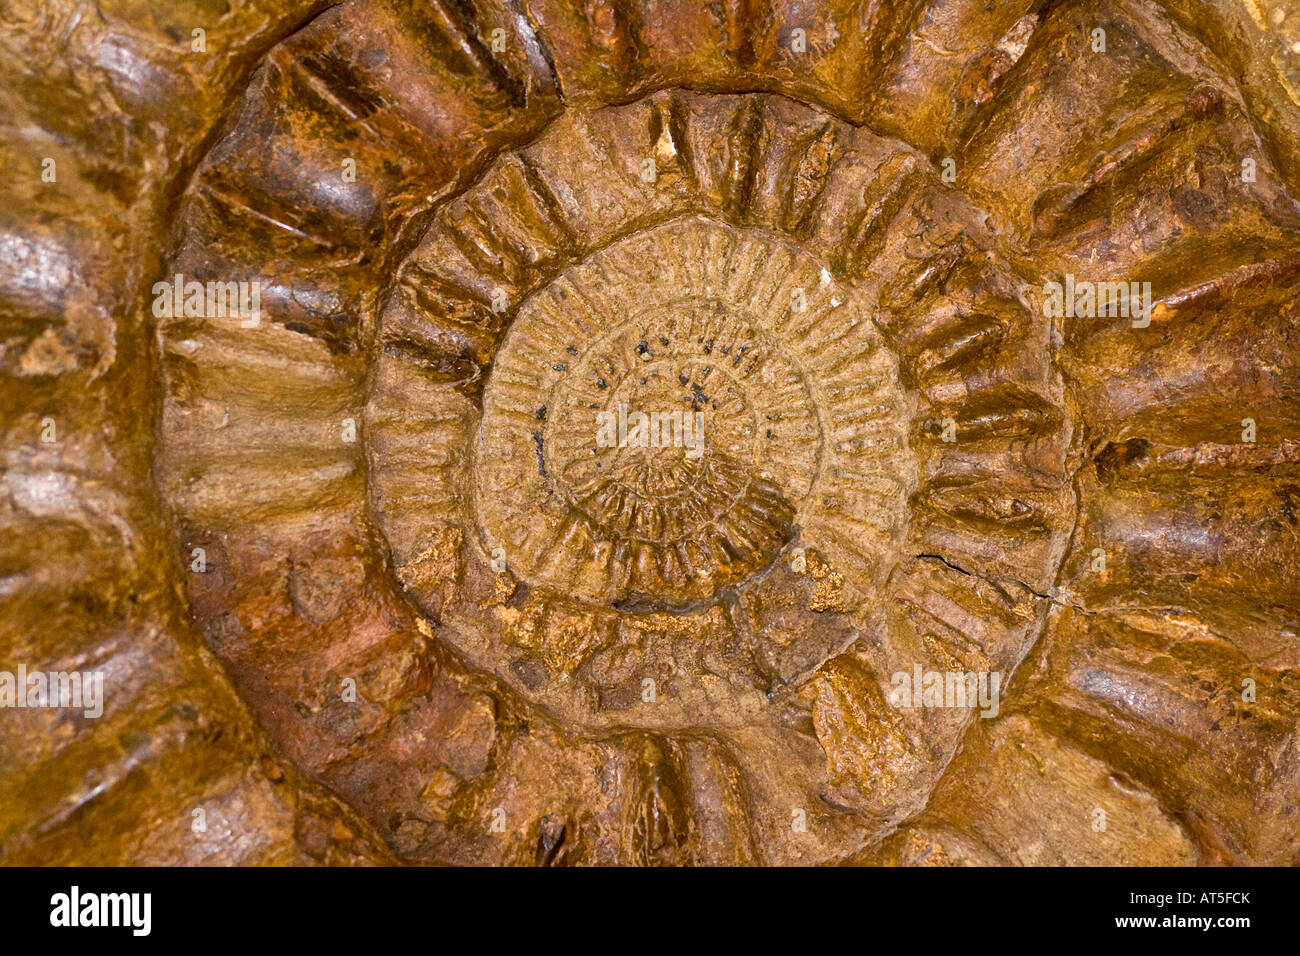 Libre d'une ammonite fossilisée une espèce d'animaux marins à partir de la période jurassique précoce Banque D'Images